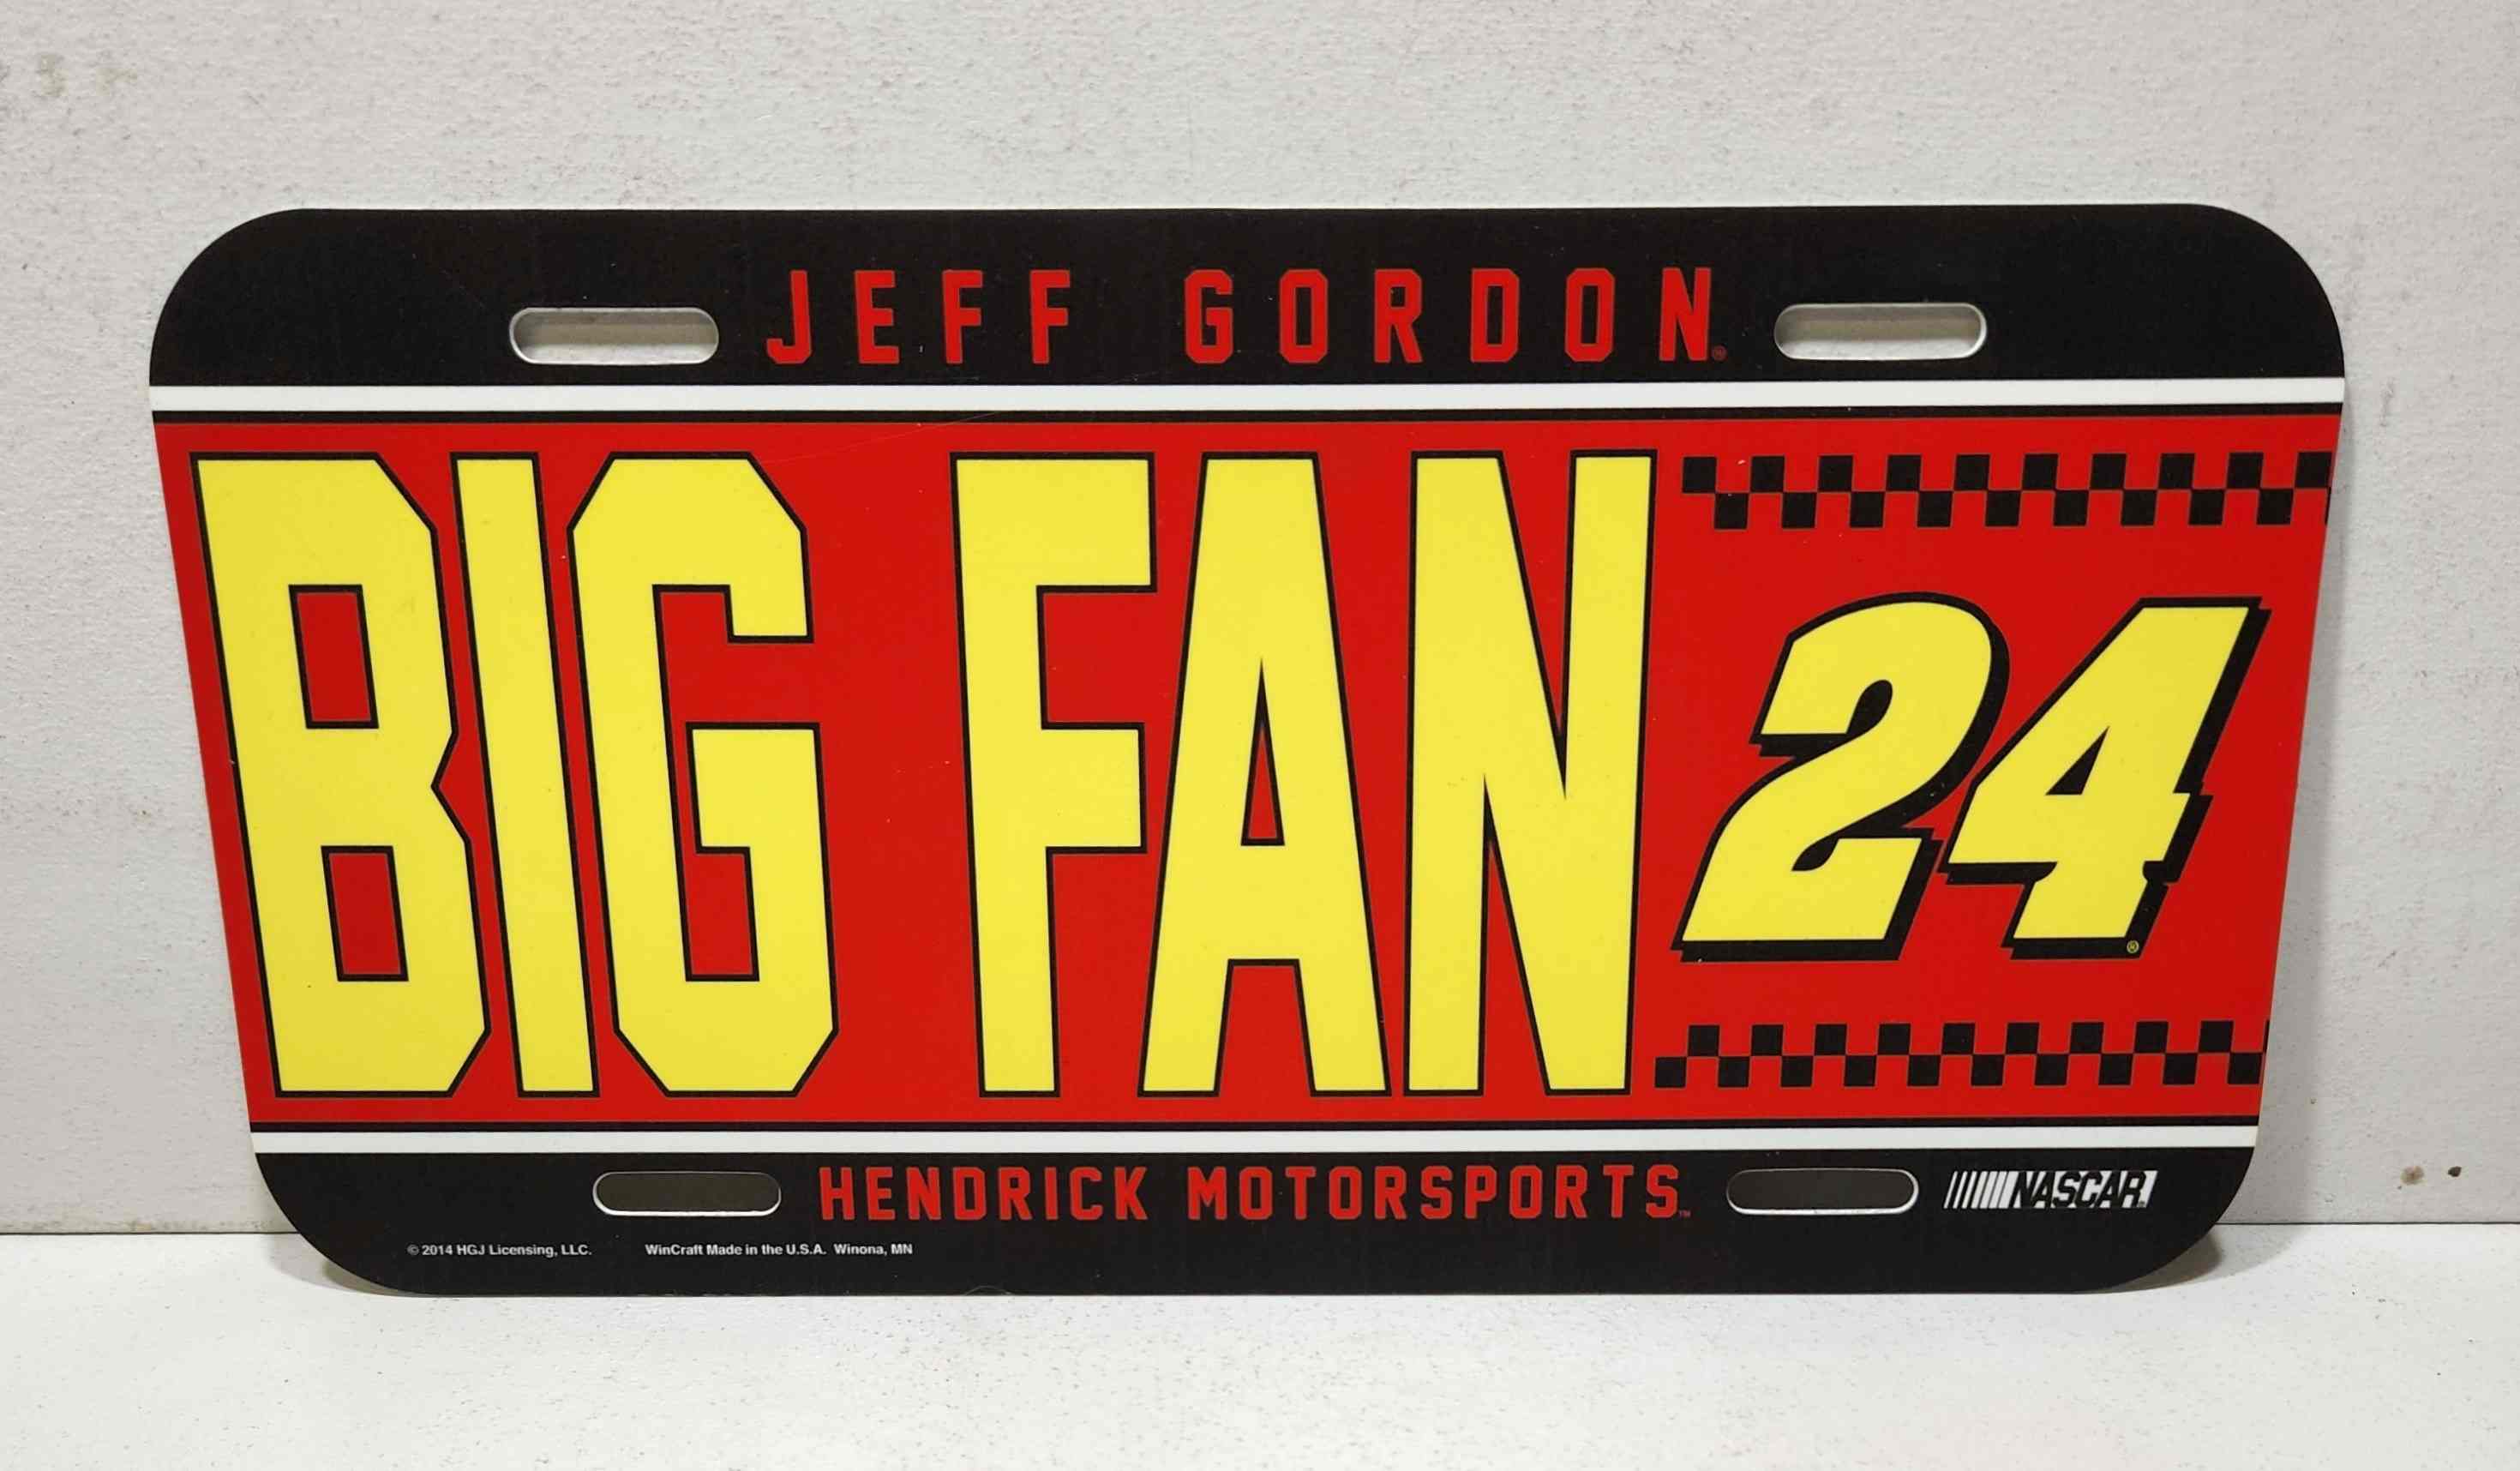 2014 Jeff Gordon "Big Fan" License Plate by Wincraft